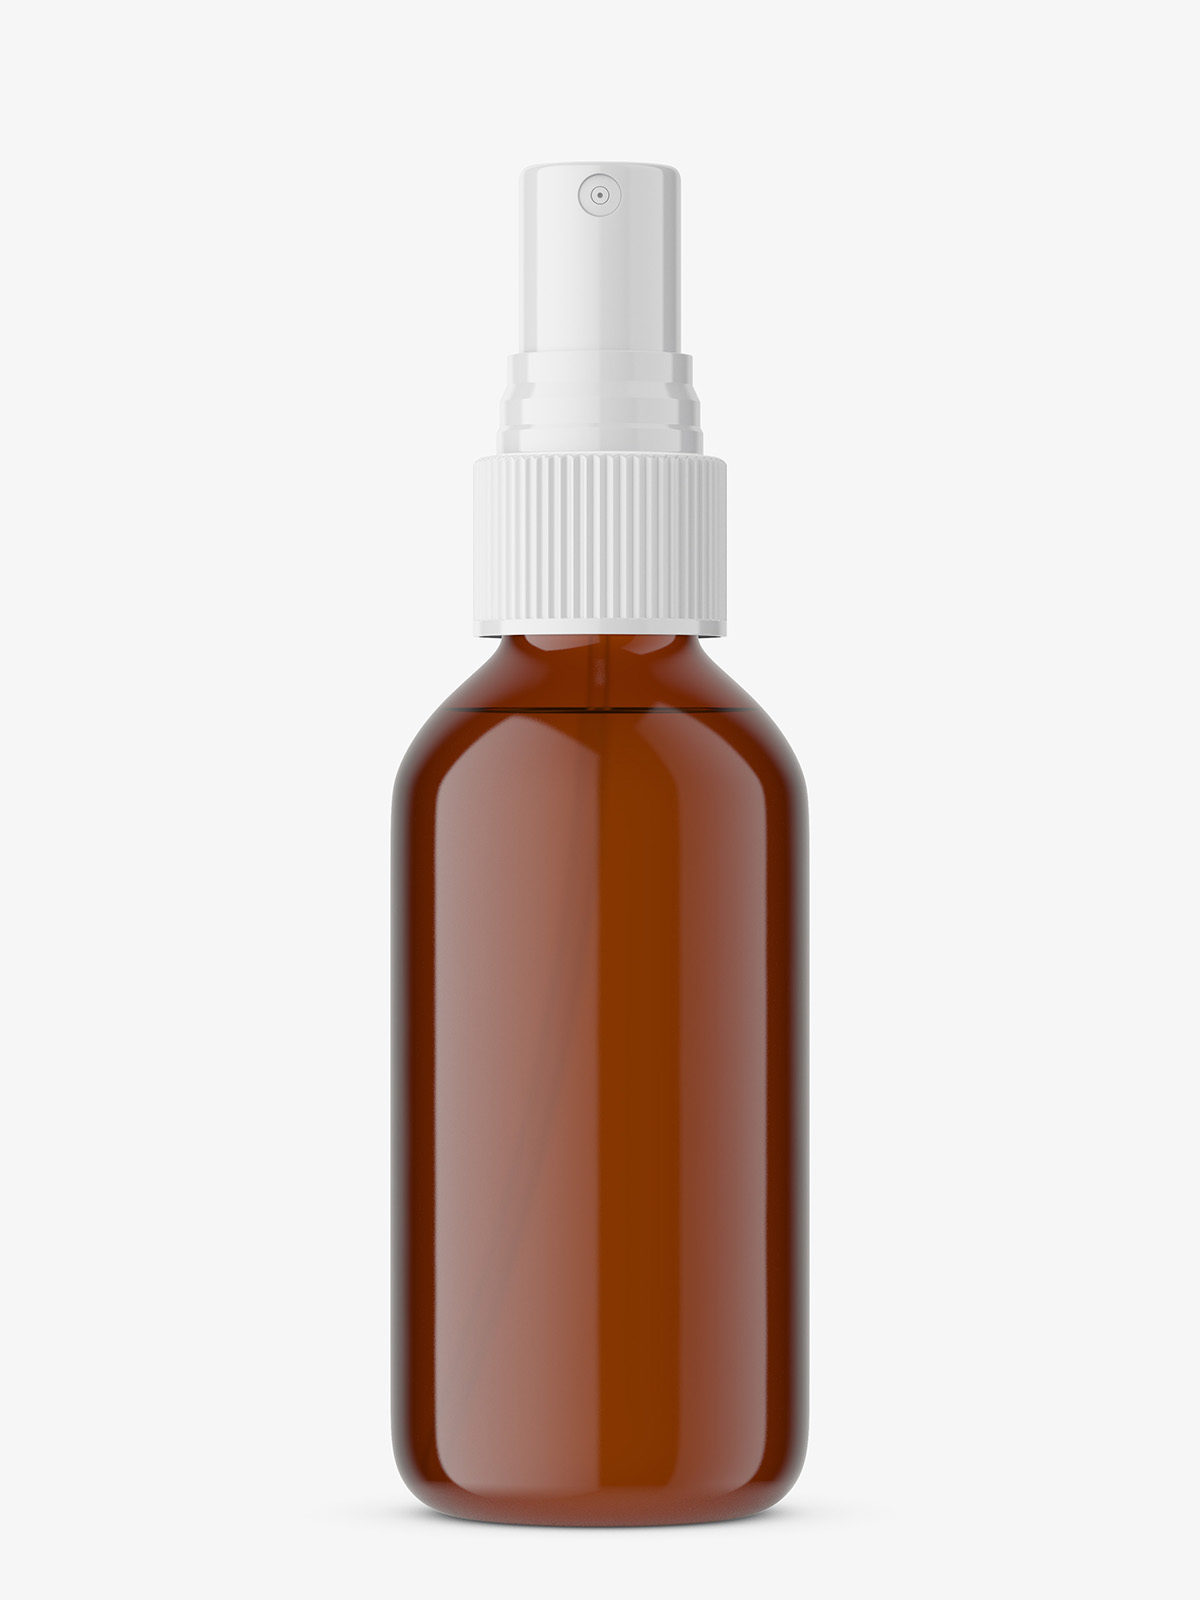 Download Amber Spray Bottle Mockup Smarty Mockups PSD Mockup Templates